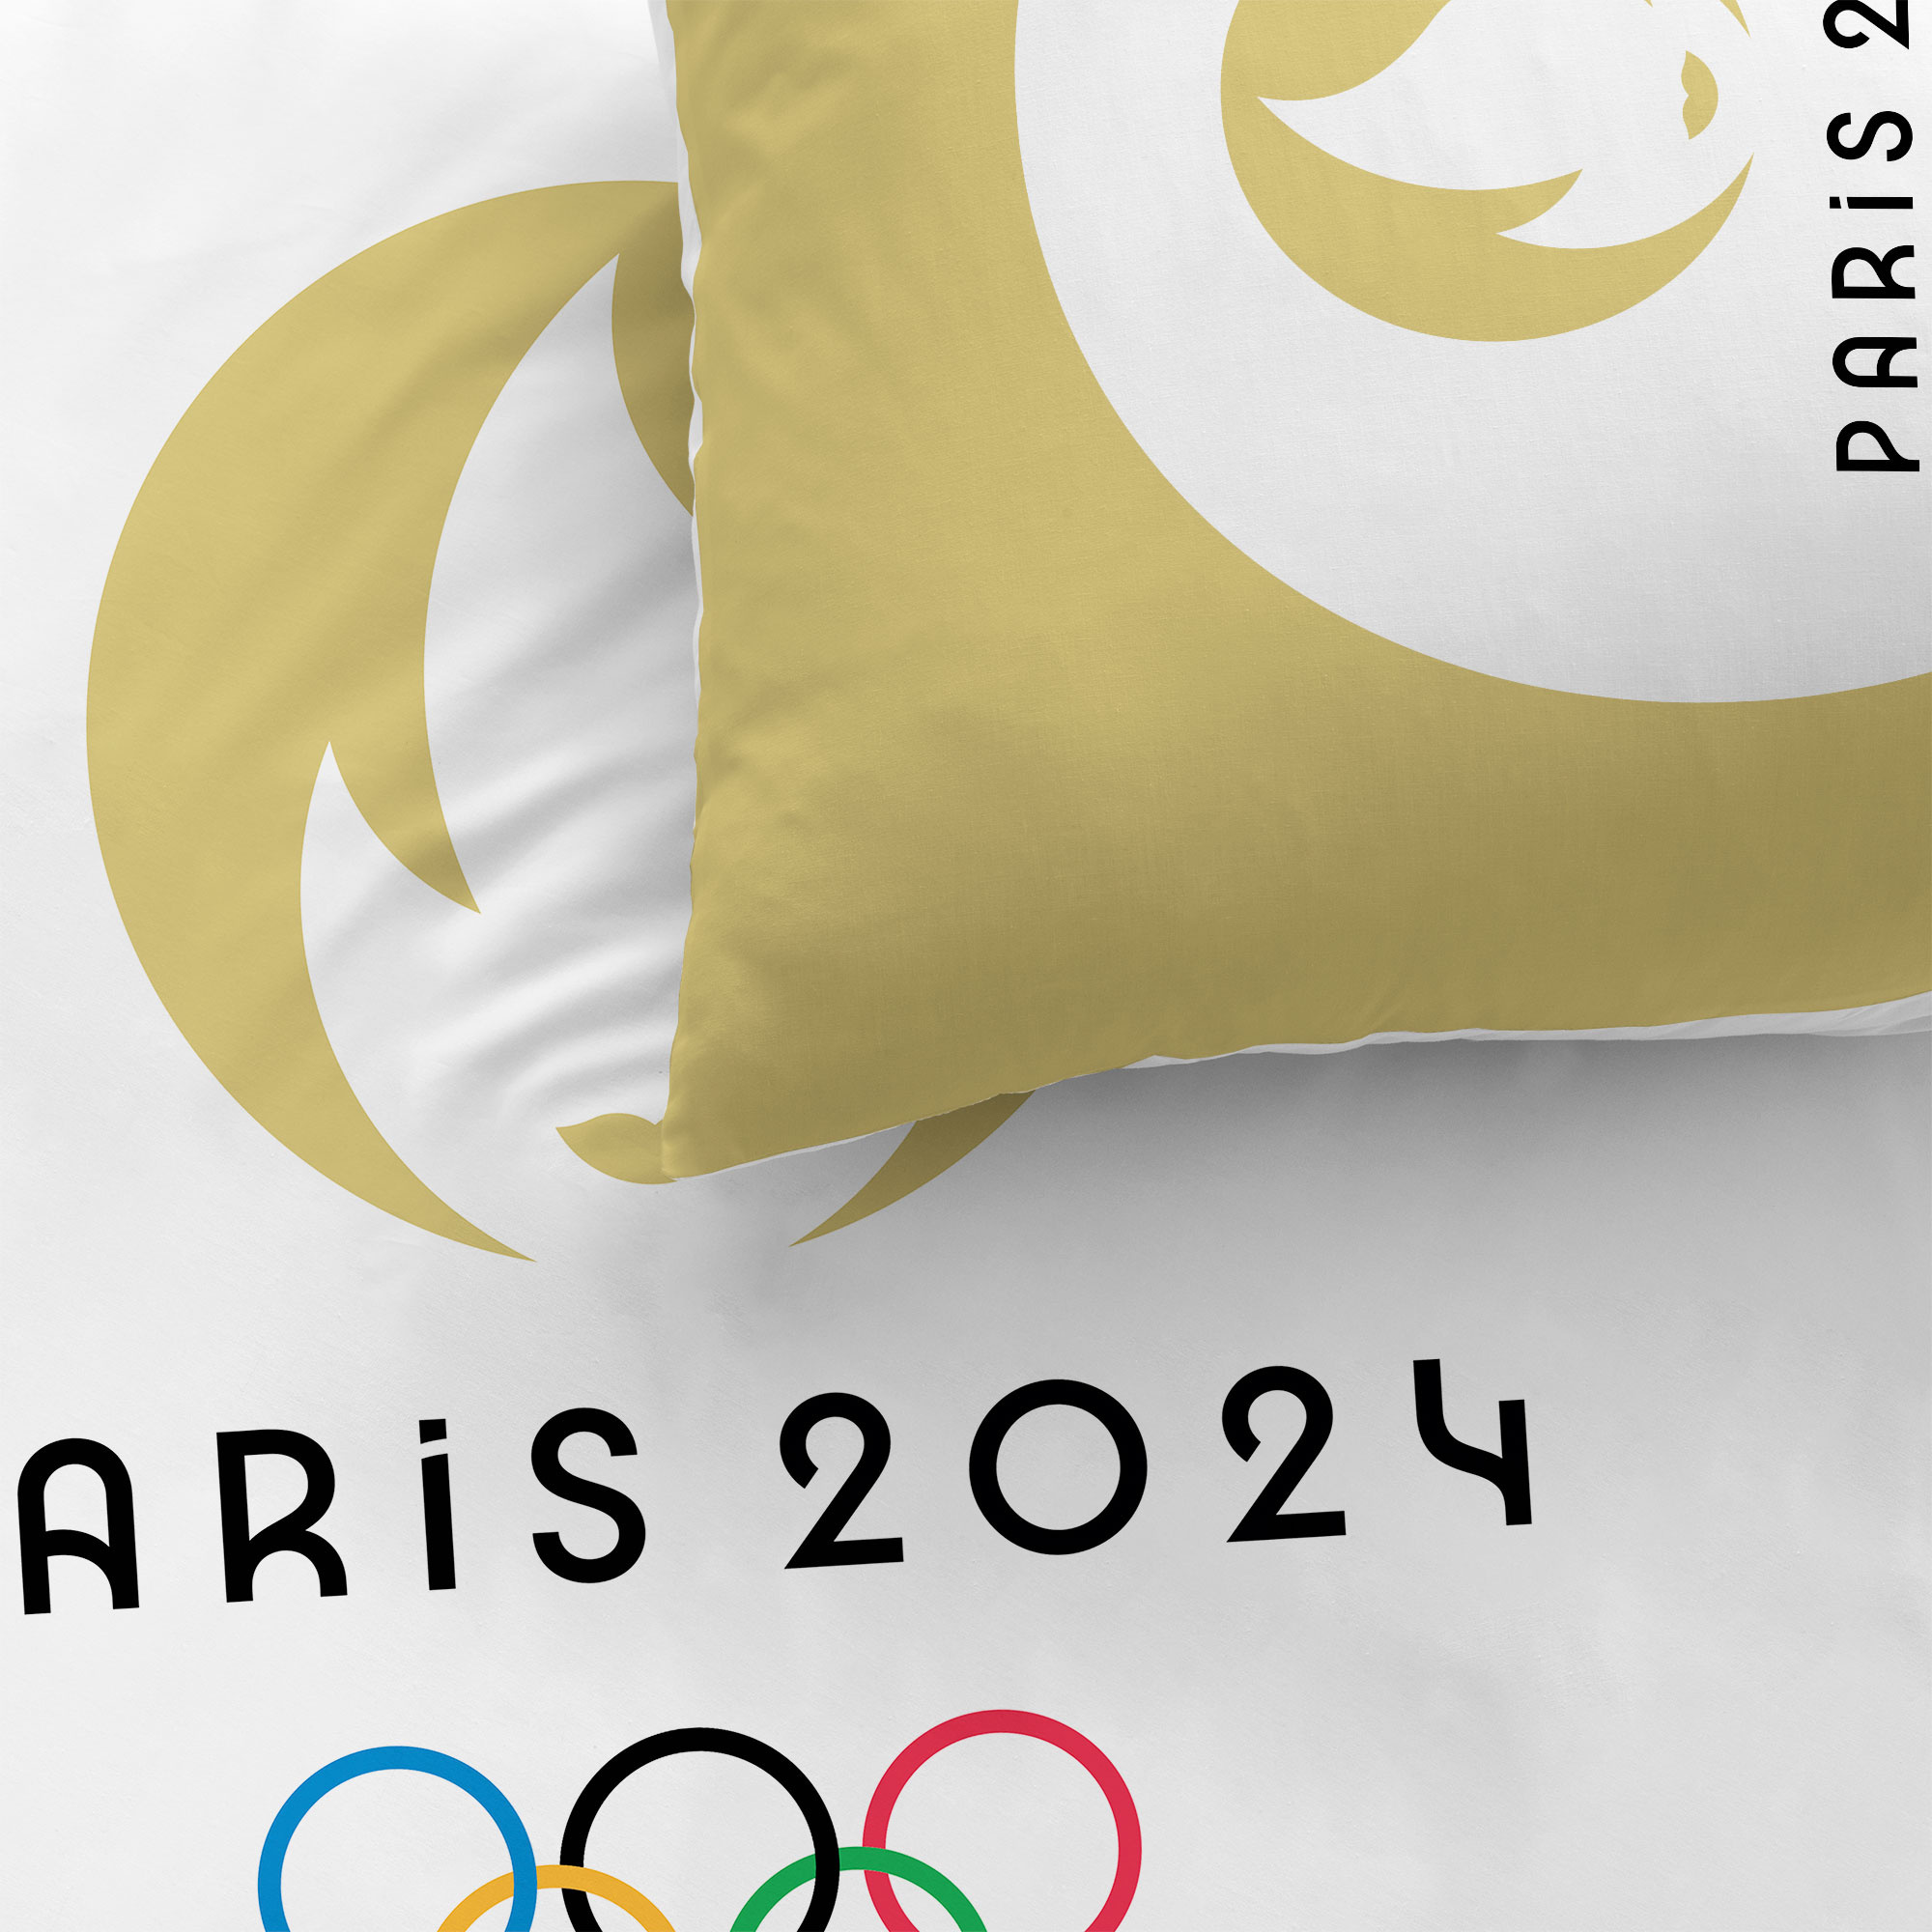 Olympische Spelen Dekbedovertrek, Parijs 2024 Logo - Eenpersoons - 140 x 200 cm - Katoen